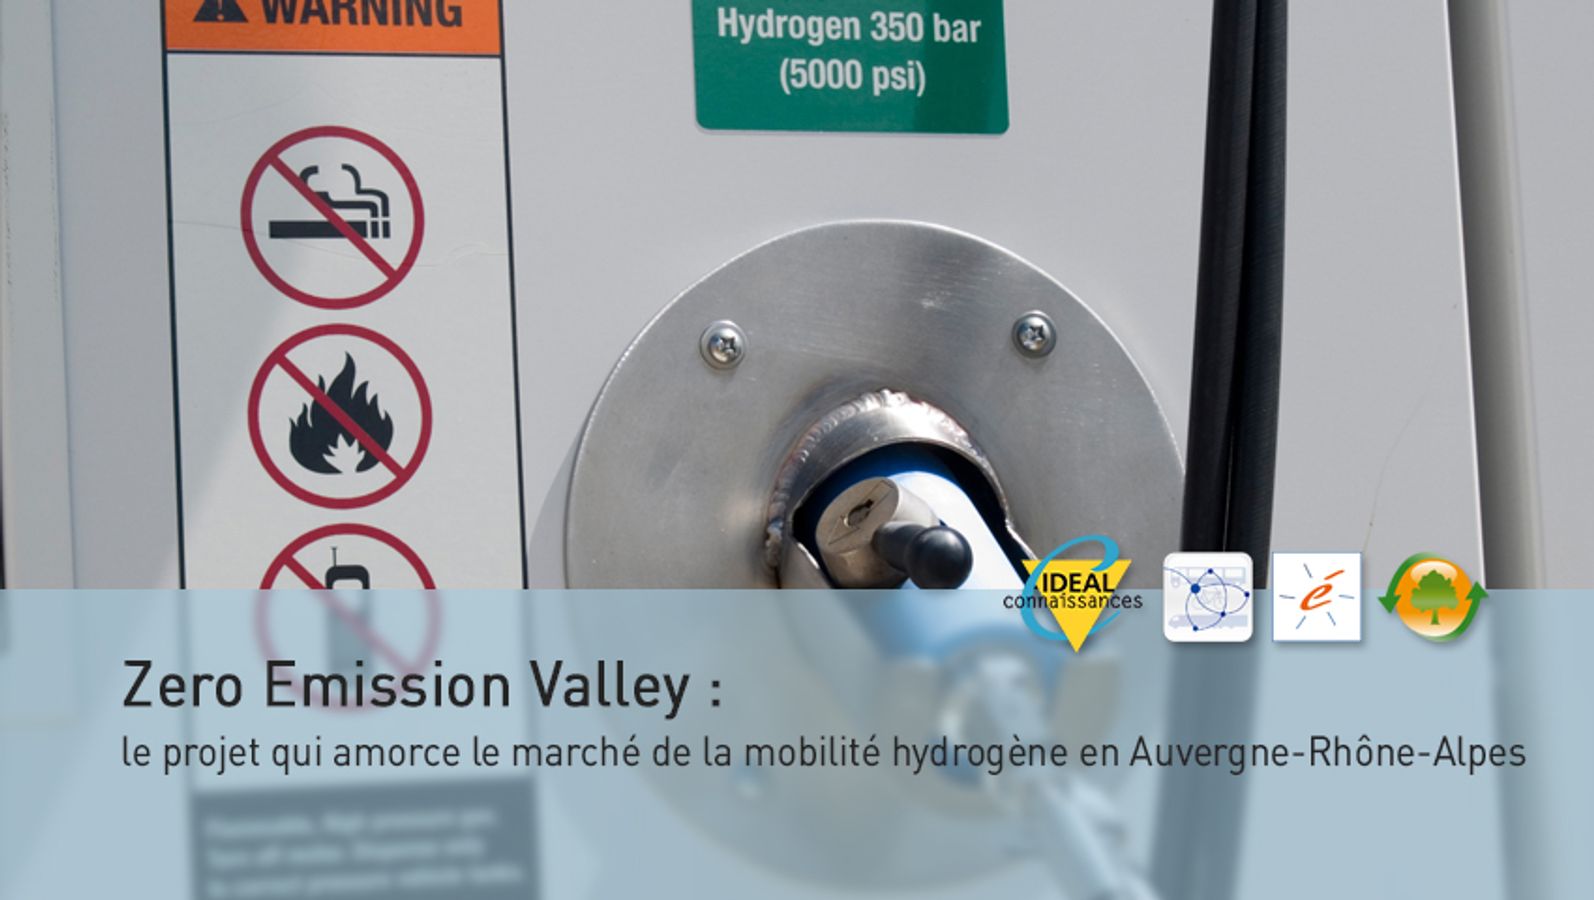 Zero Emission Valley : le projet qui amorce le marché de la mobilité hydrogène en Auvergne-Rhône-Alpes